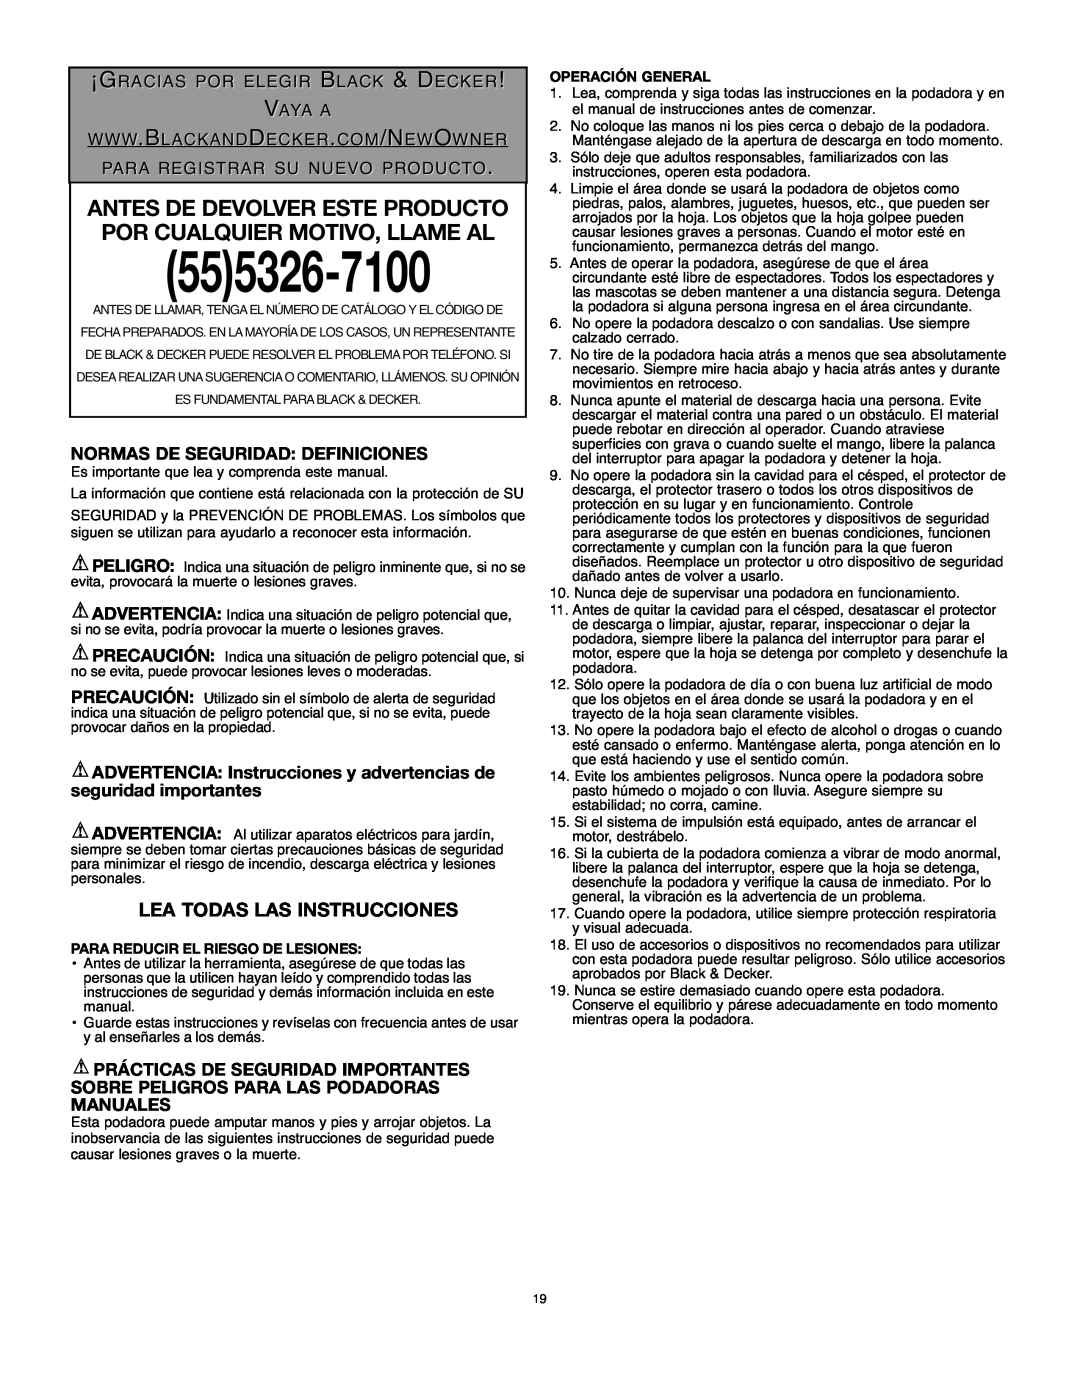 Black & Decker MM675 instruction manual Lea Todas Las Instrucciones, ¡Gracias Por Elegir Black & Decker Vaya A, 555326-7100 